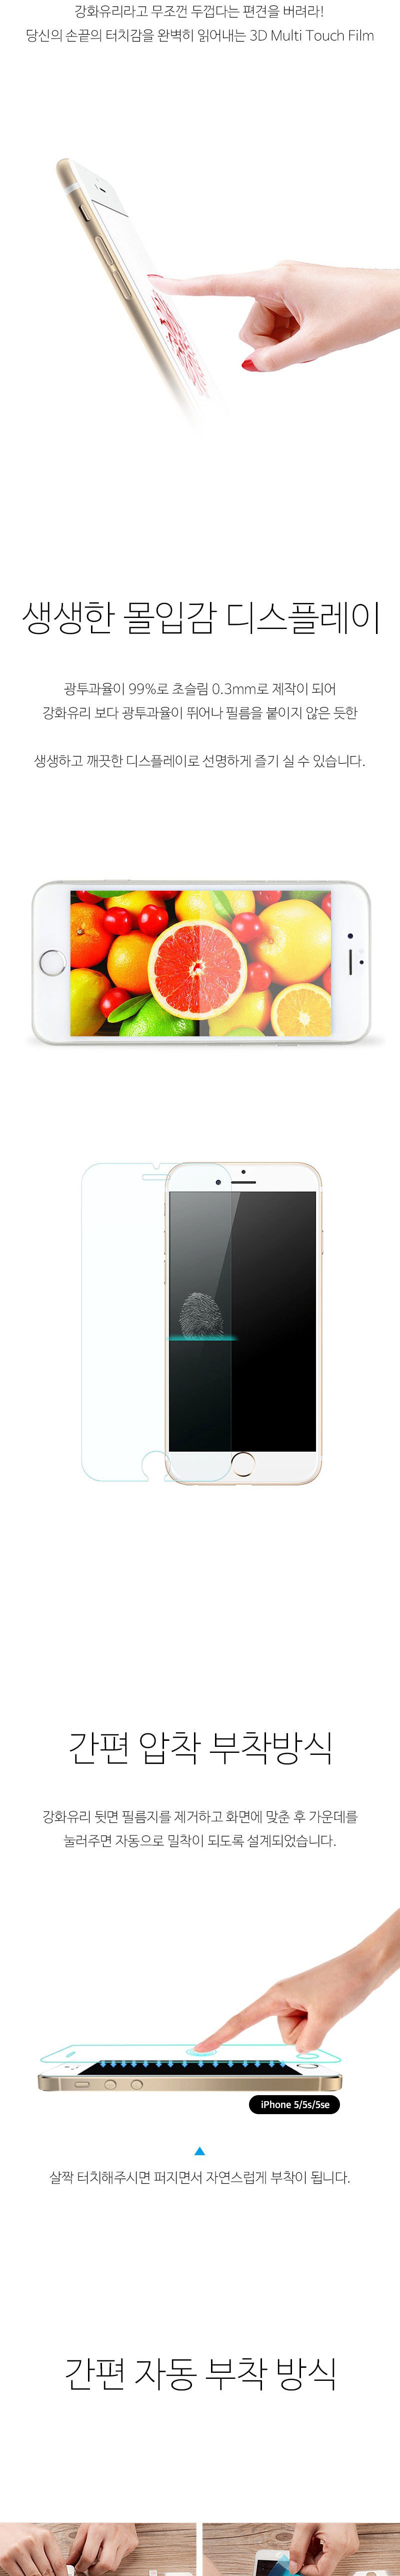 [아이몰제작] 아이폰 5/5S/SE 0.3mm 강화유리필름 9h 5,900원 - 아이몰 디지털, 모바일 액세서리, 보호필름, 애플 바보사랑 [아이몰제작] 아이폰 5/5S/SE 0.3mm 강화유리필름 9h 5,900원 - 아이몰 디지털, 모바일 액세서리, 보호필름, 애플 바보사랑